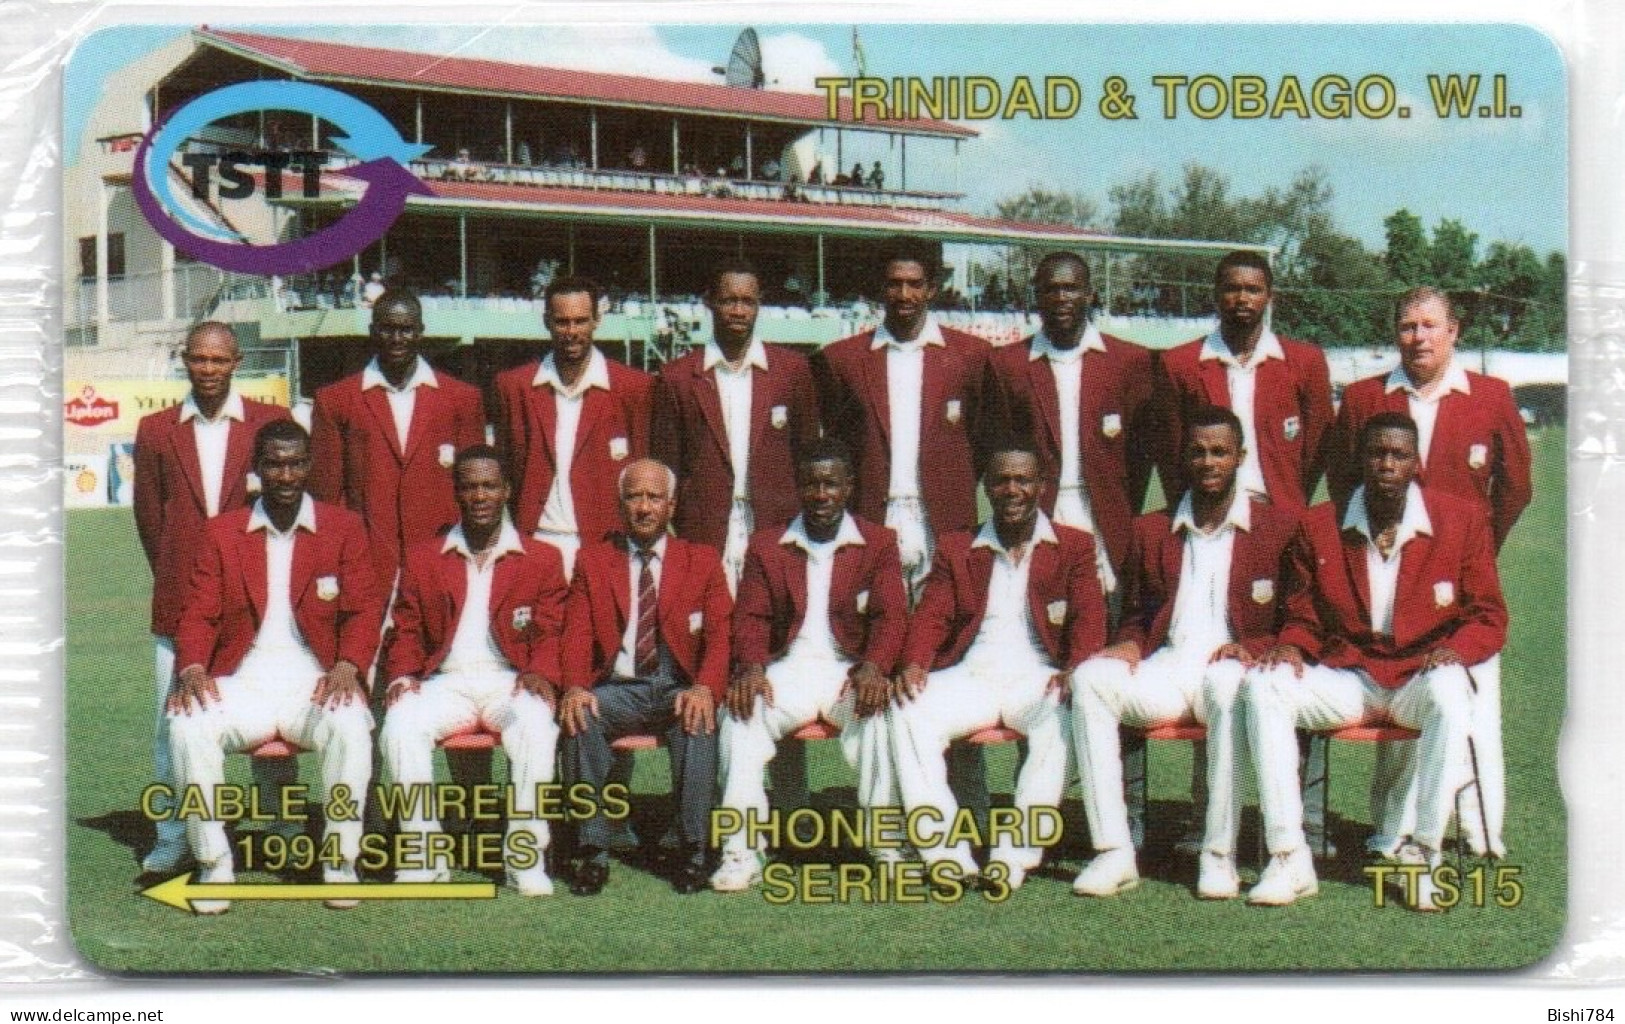 Trinidad & Tobago - C&W 1994 Series - 8CTTC - Trinidad & Tobago